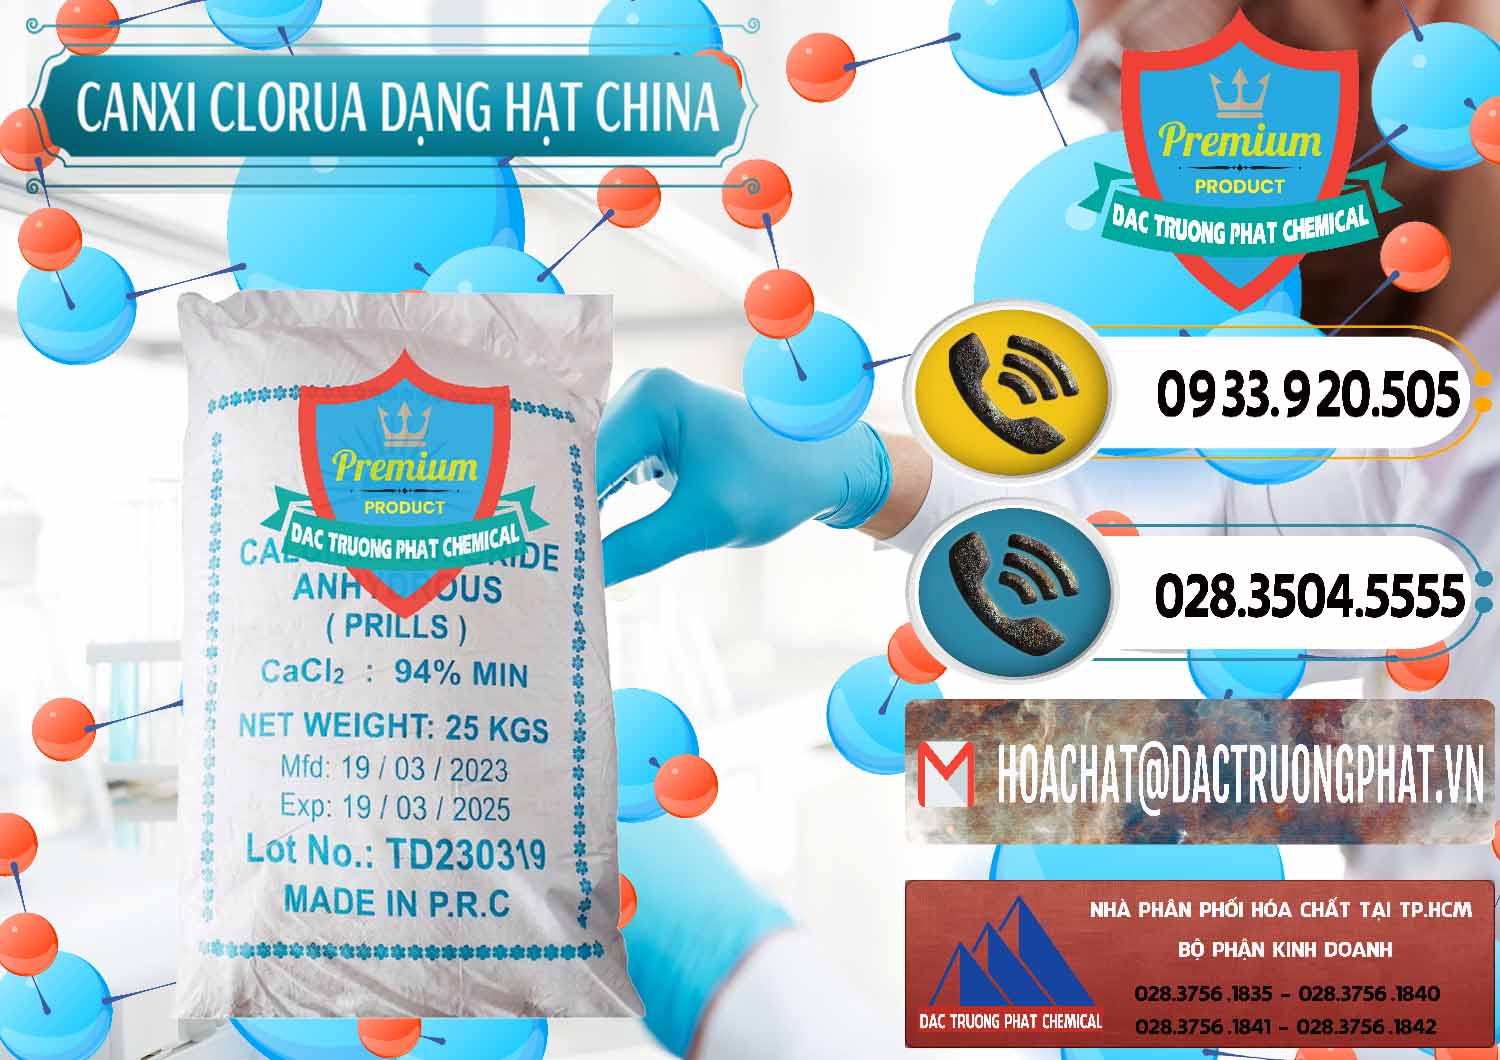 Công ty chuyên kinh doanh _ bán CaCl2 – Canxi Clorua 94% Dạng Hạt Trung Quốc China - 0373 - Nhập khẩu _ cung cấp hóa chất tại TP.HCM - hoachatdetnhuom.vn